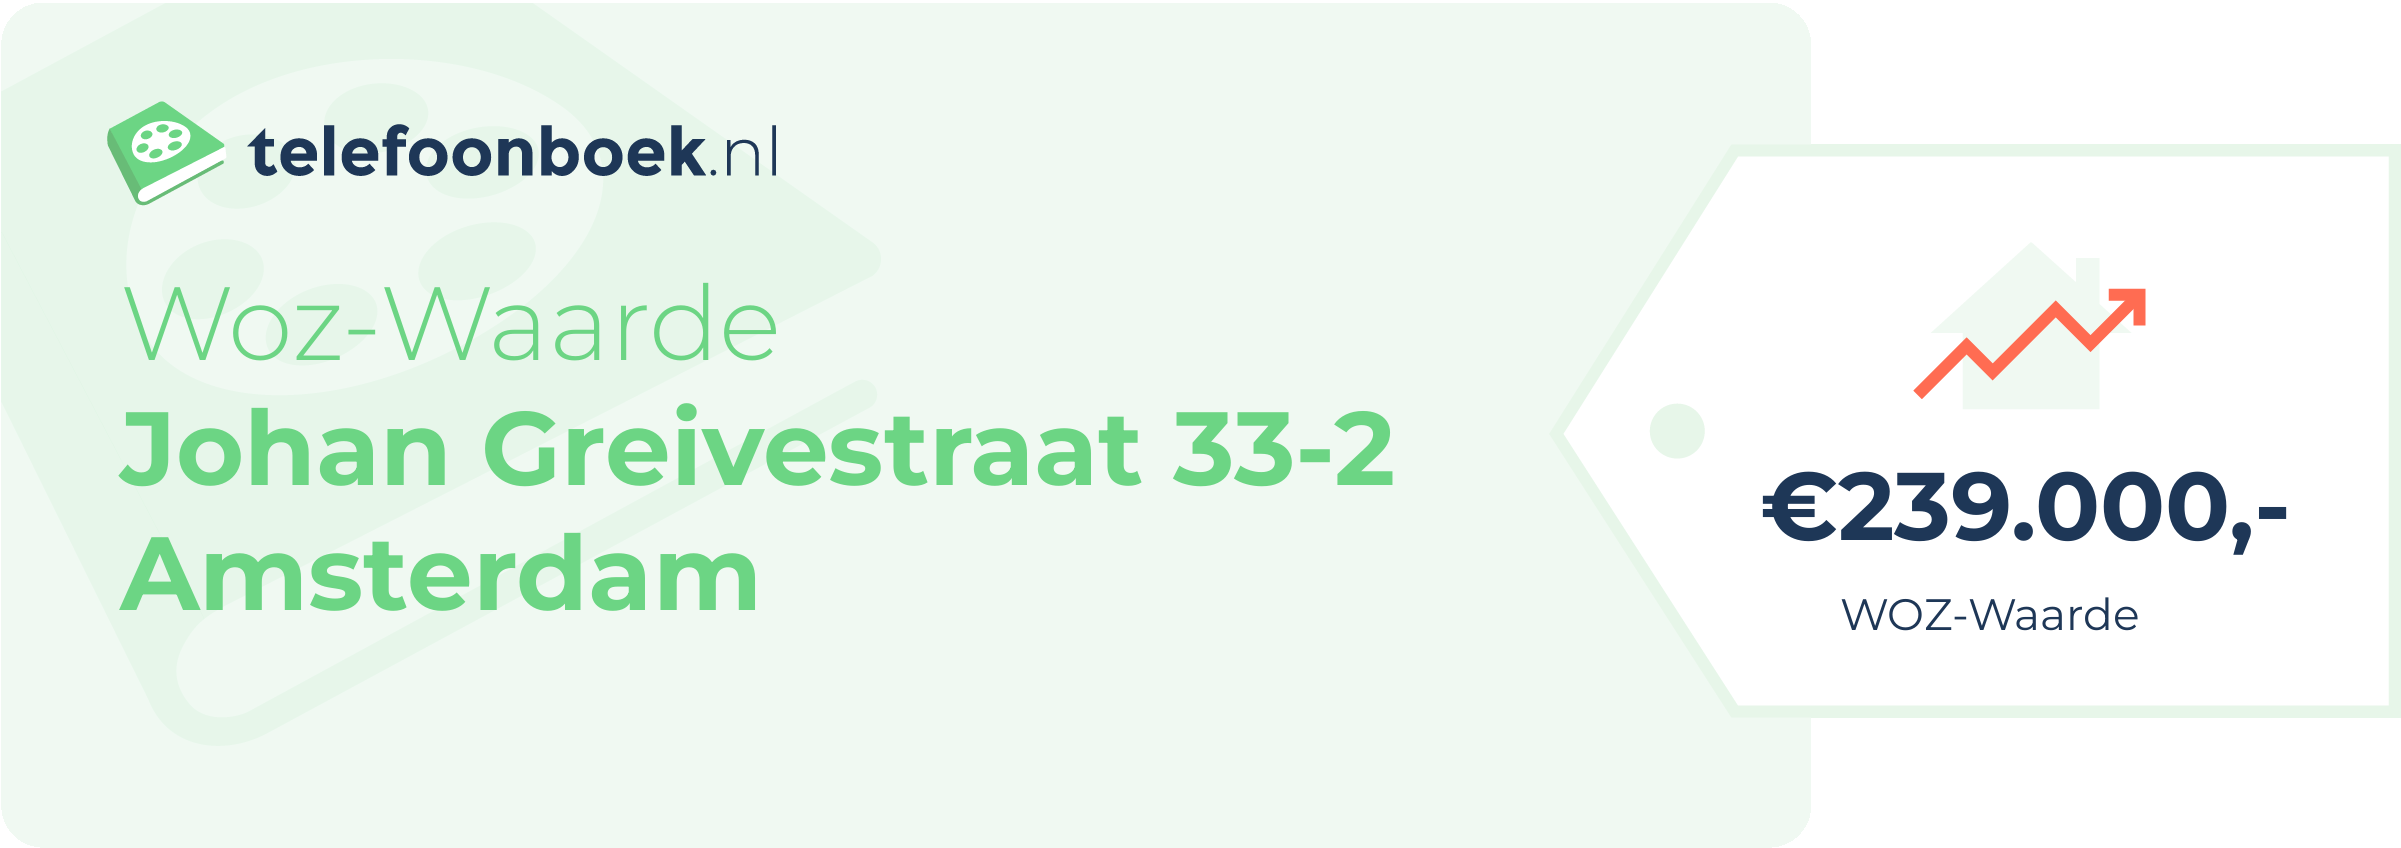 WOZ-waarde Johan Greivestraat 33-2 Amsterdam